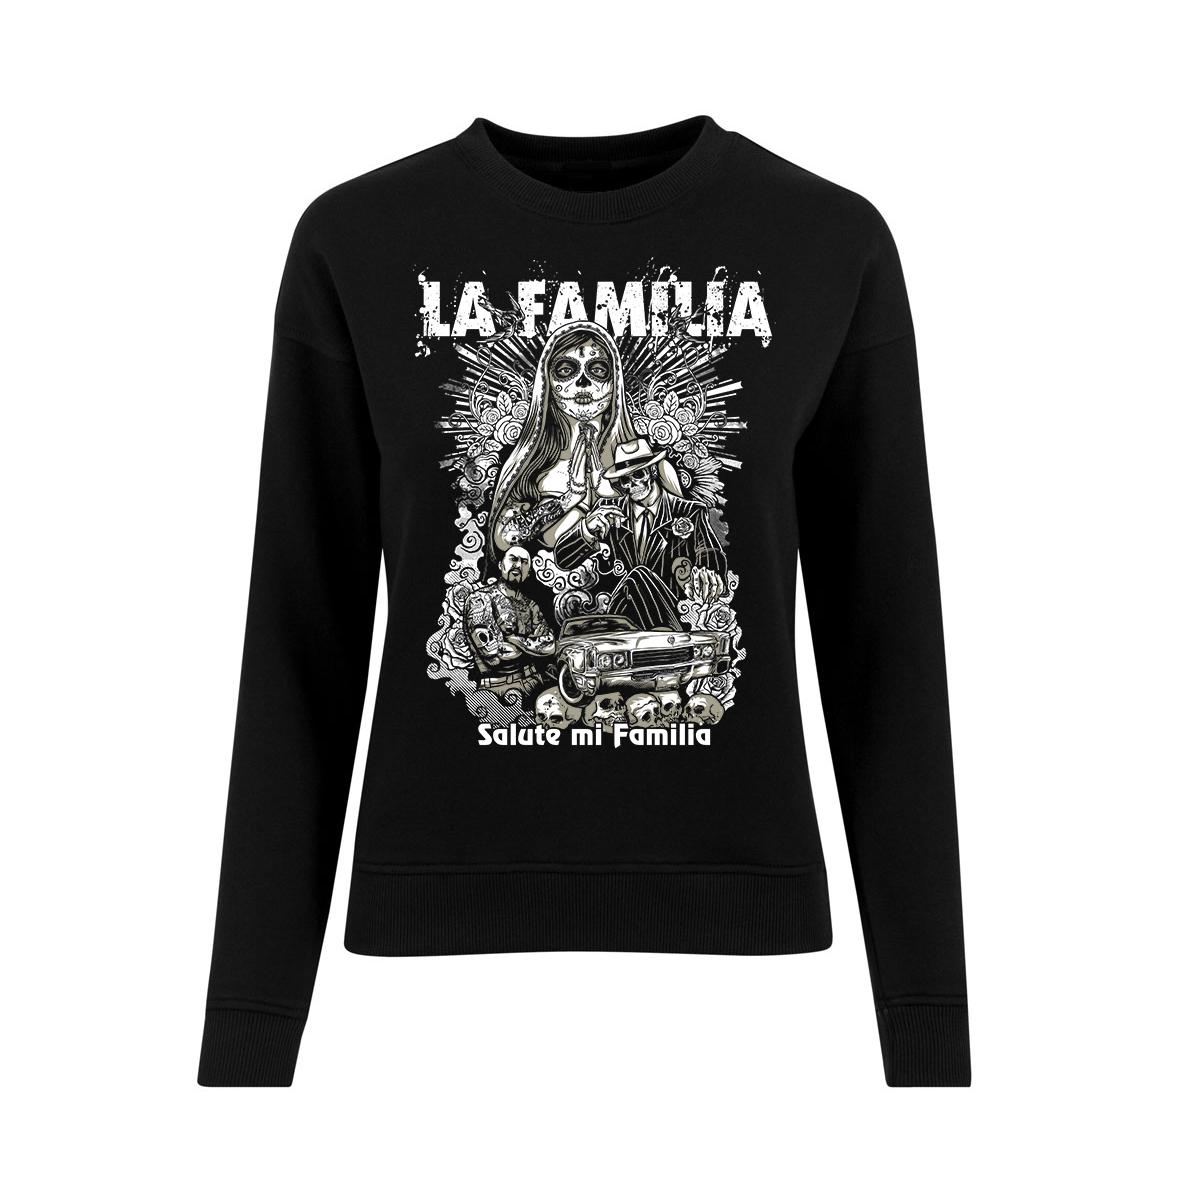 La Familia - Salute mi familia - Frauen Pullover - schwarz